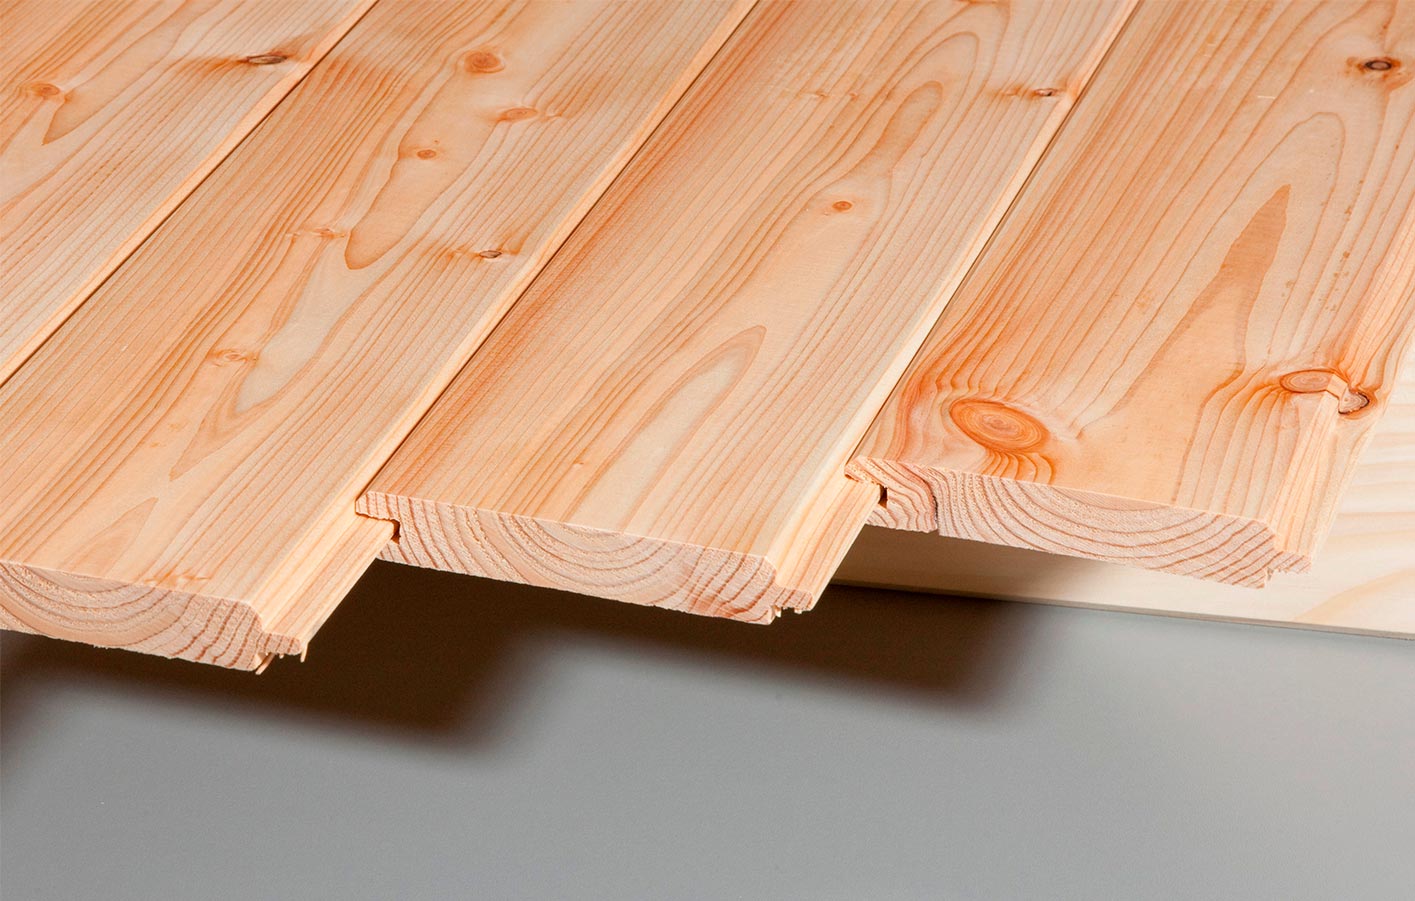 Faseprofil - Profilhölzer & Verarbeitung für Holzfassaden in Biberach